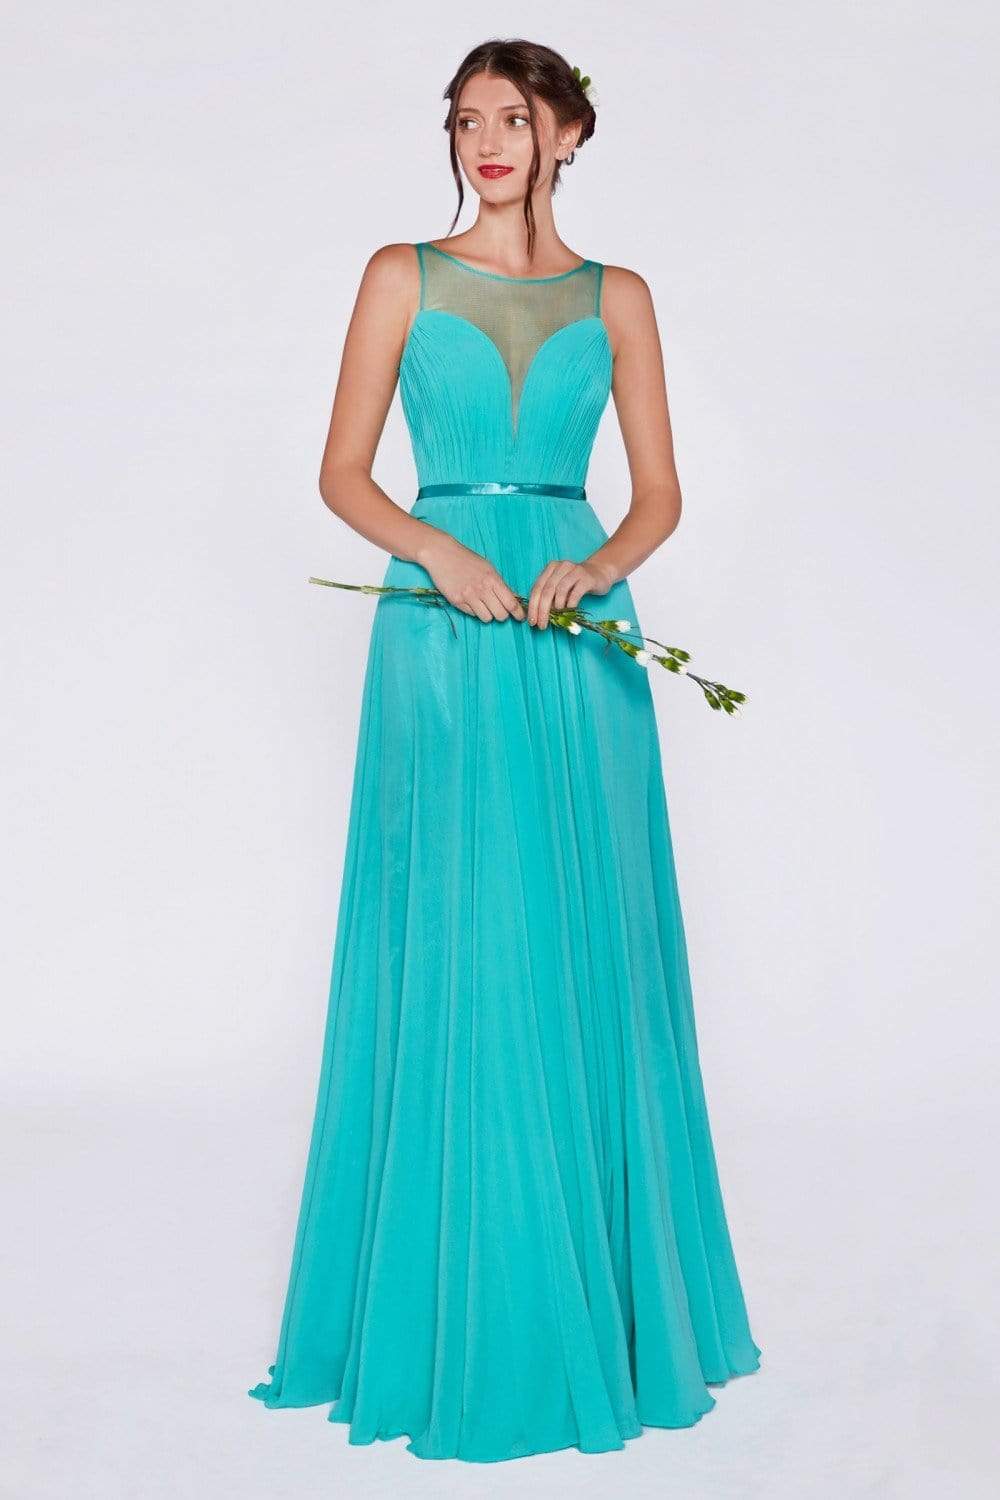 Cinderella Divine - 7458 Illusion Neckline Chiffon Empire Waist Gown Special Occasion Dress